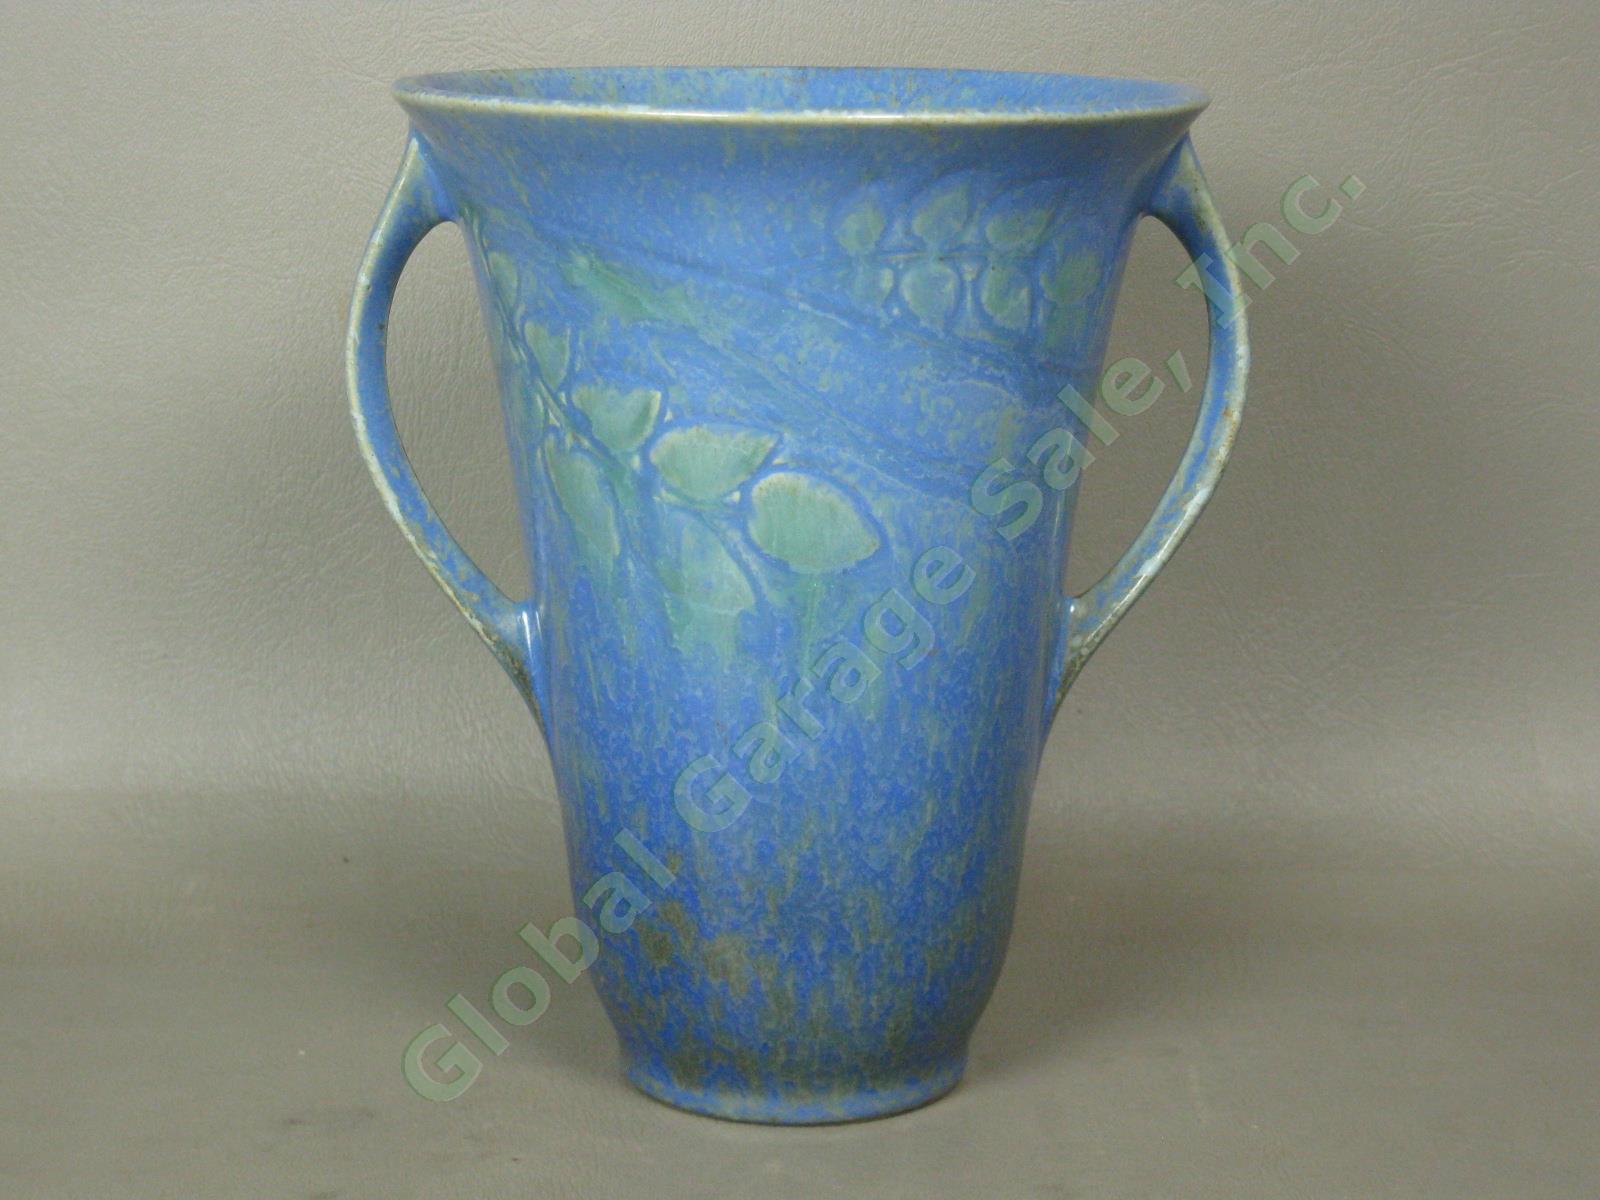 Vintage 1920s-1930s Roseville Pottery Mottled Blue Green Vase Paper Label NO RES 2